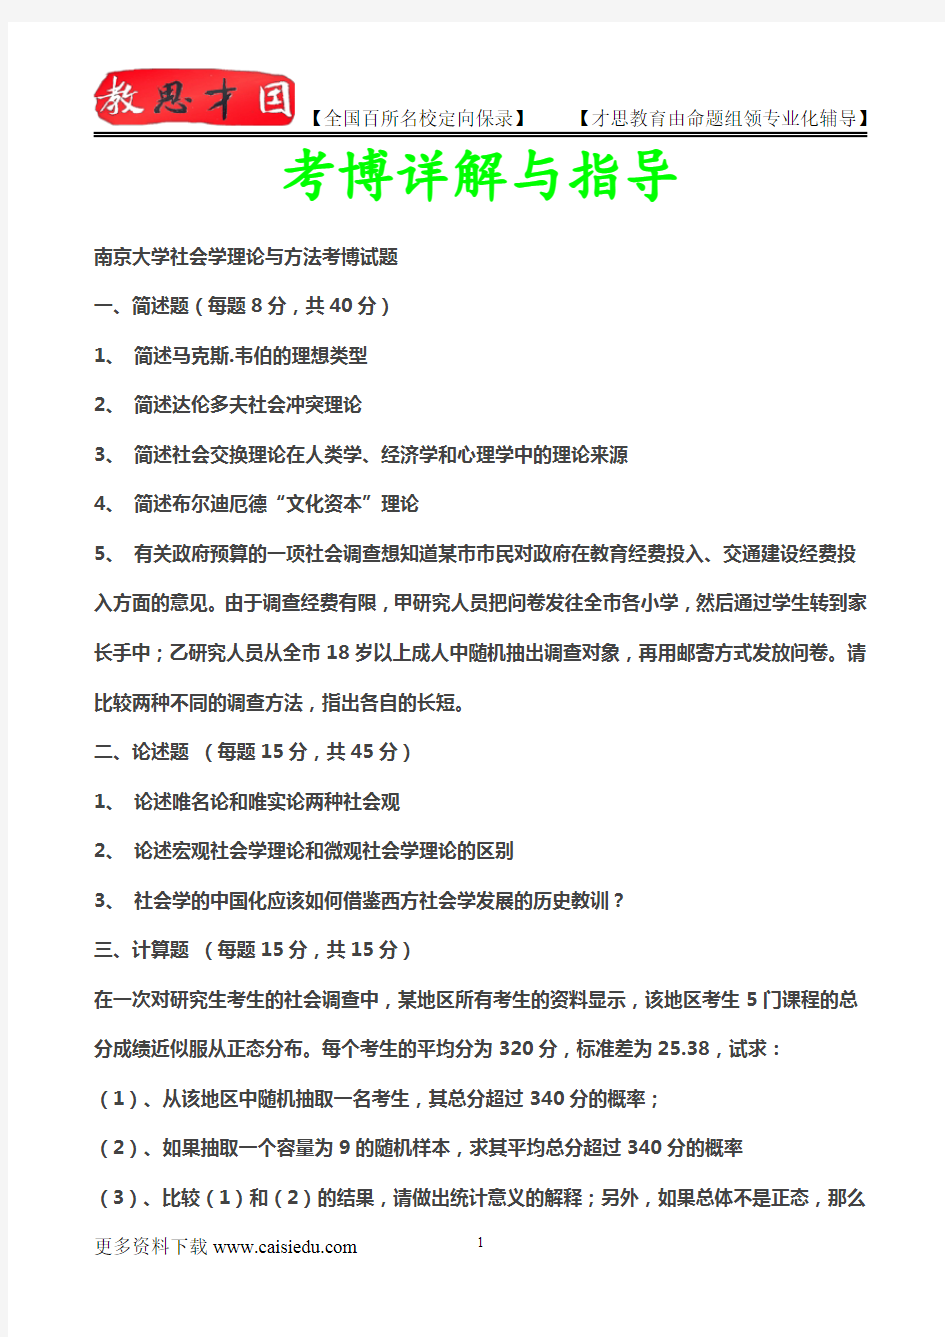 2014年南京大学社会学理论与方法考博试题,真题解析,考博心得,复试真题,真题笔记